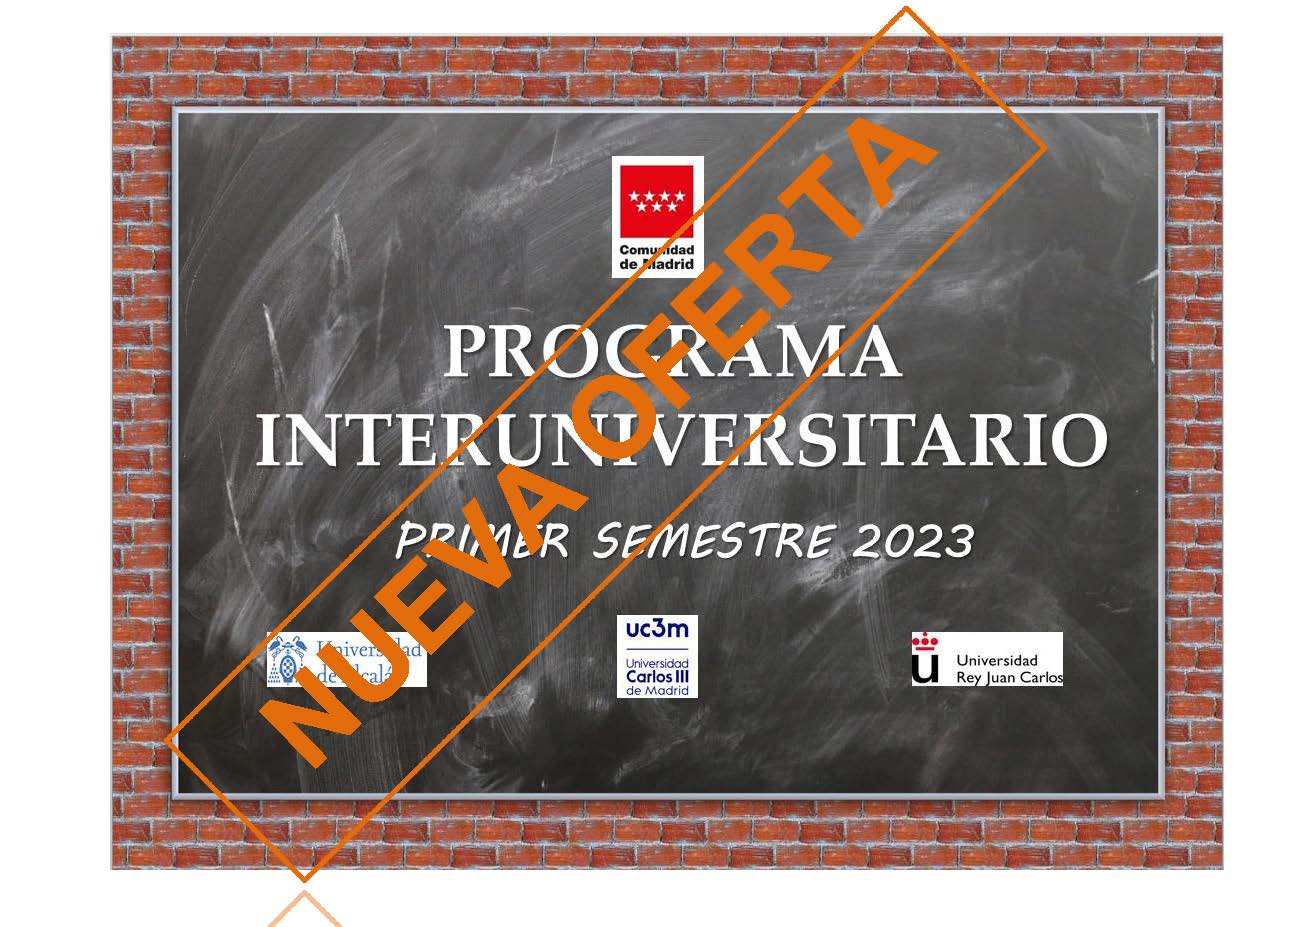 Imagen Programa Interuniversitario de la Comunidad de Madrid